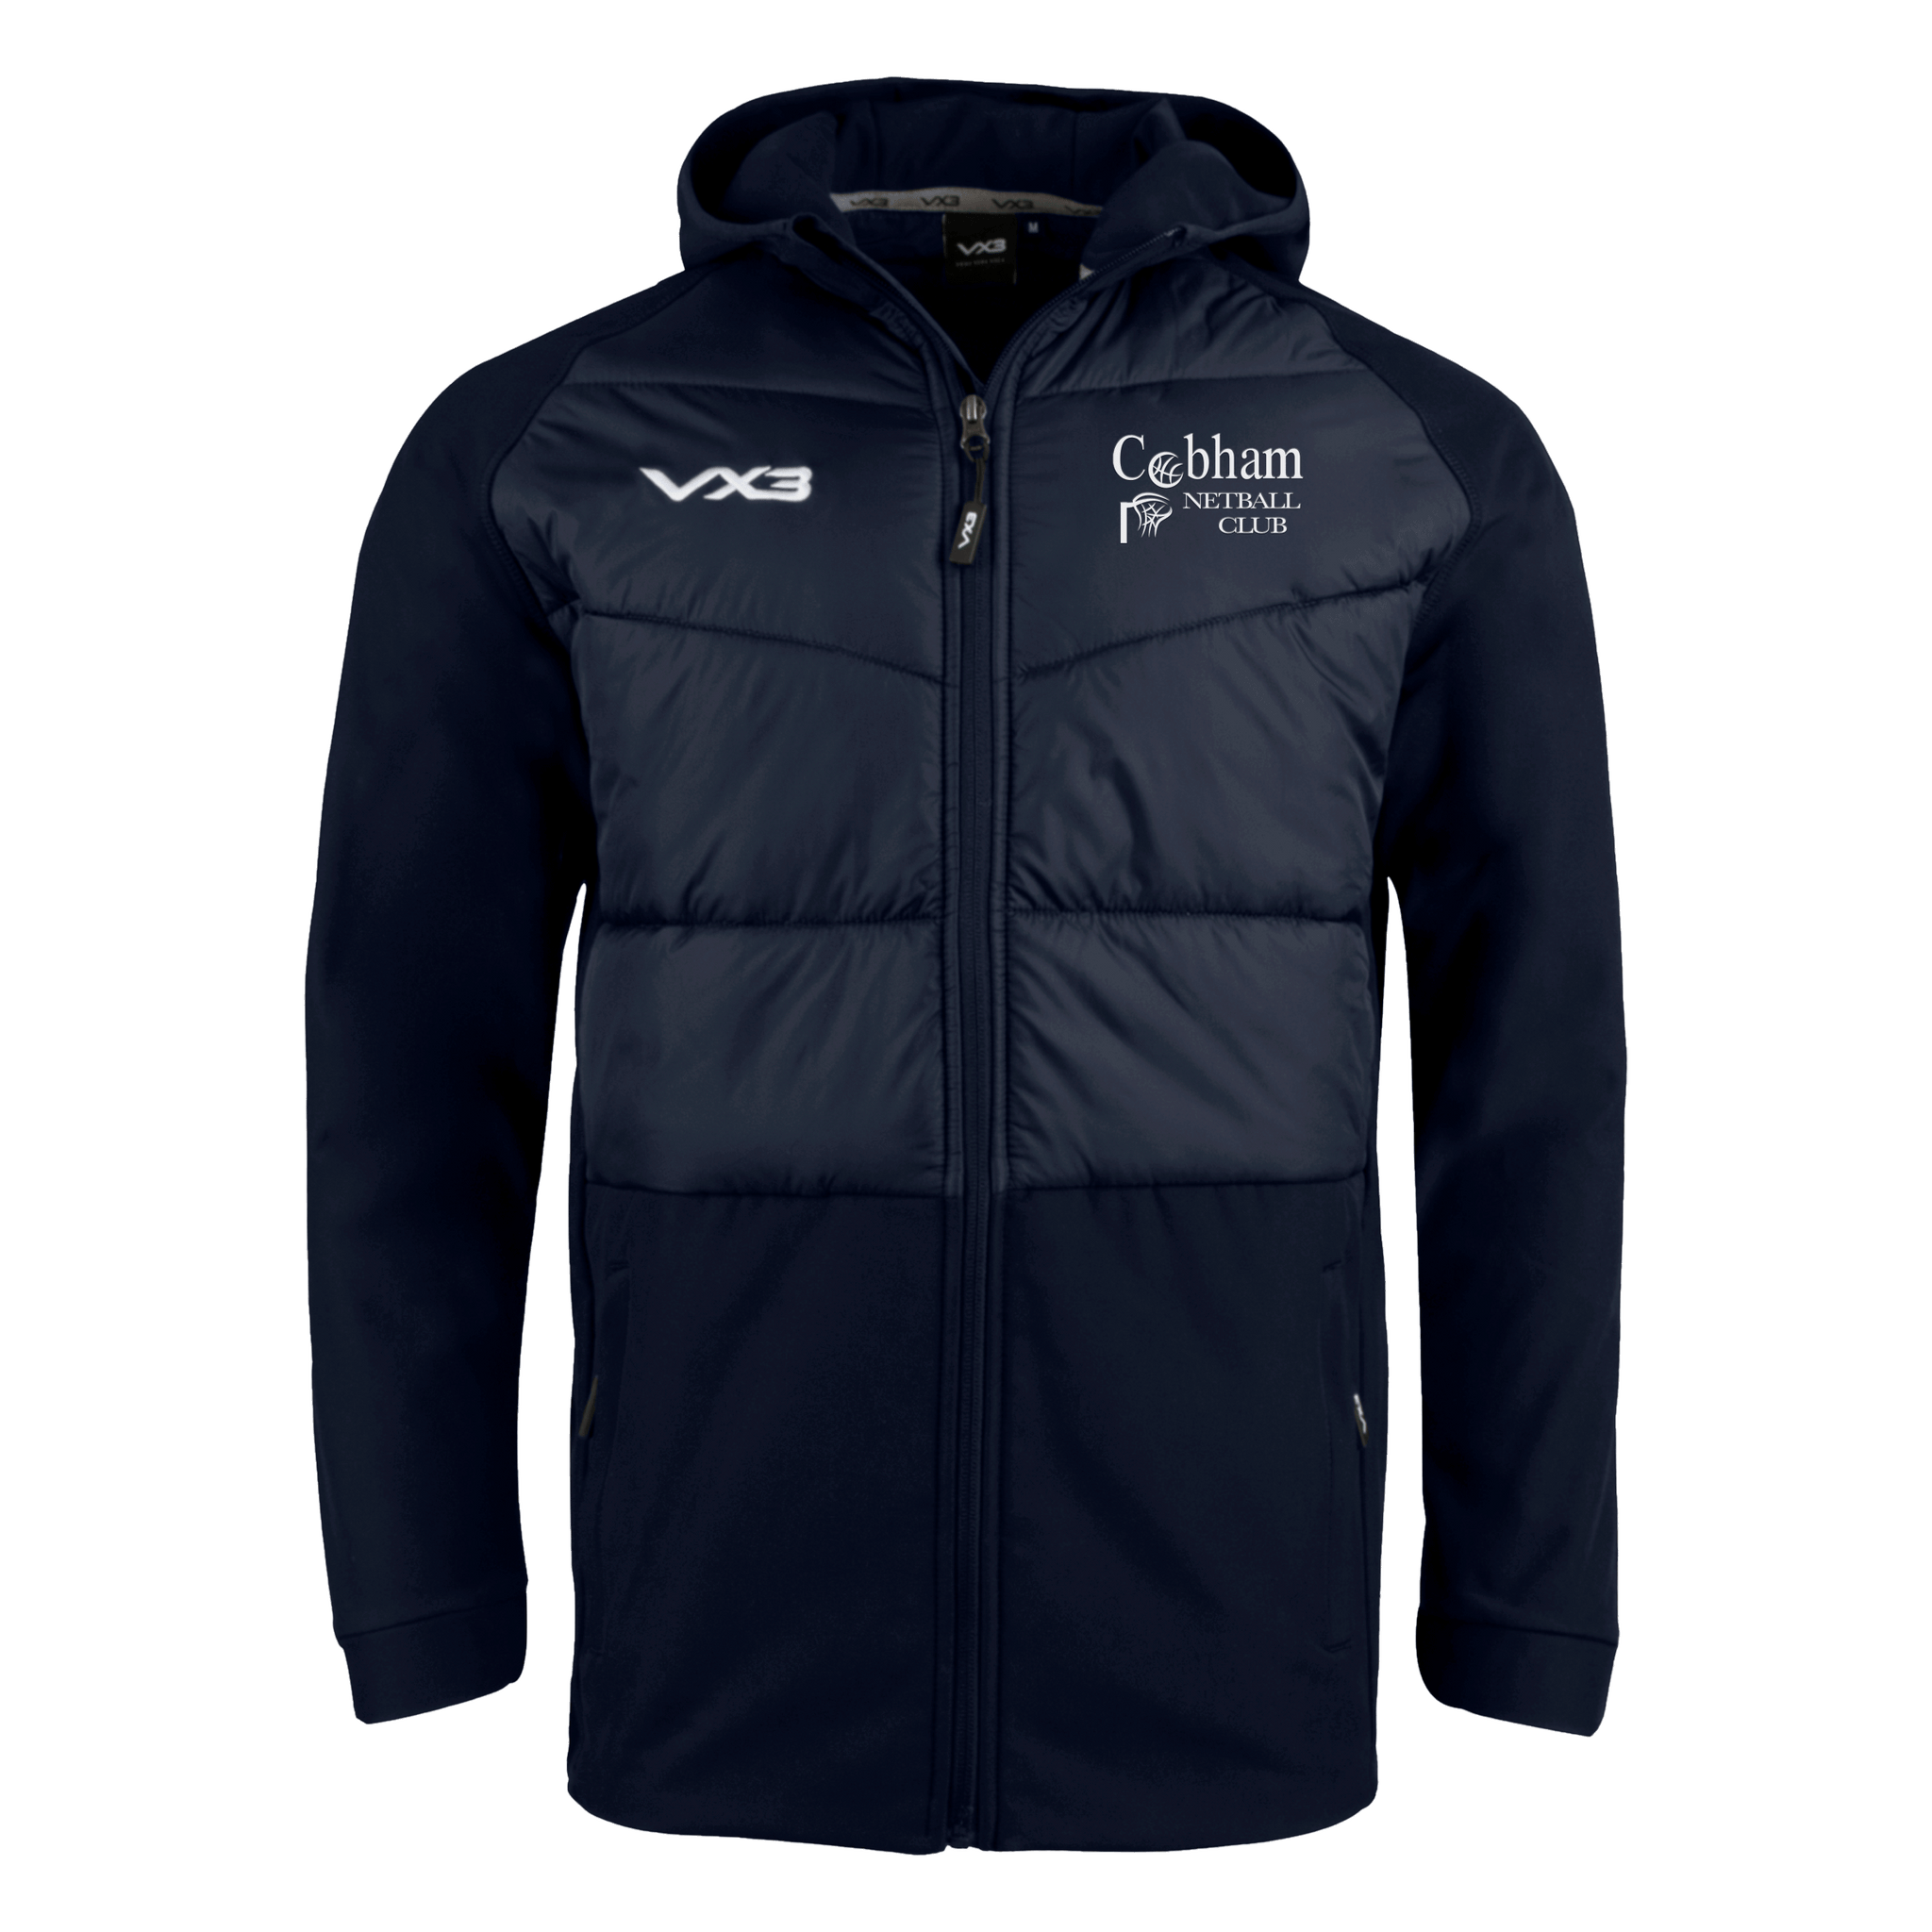 Cobham Netball Club Tempest Hybrid Jacket